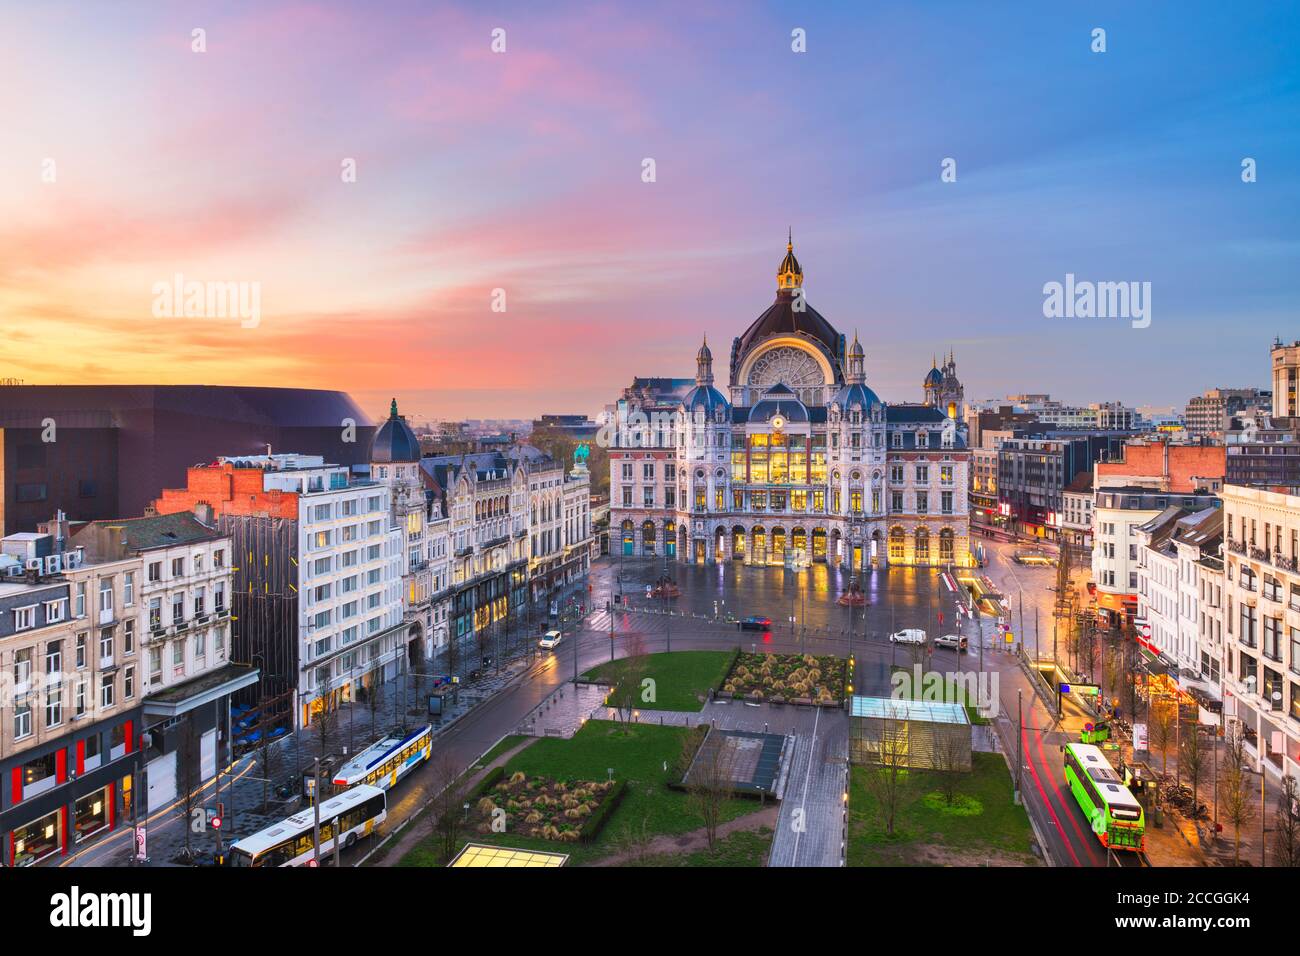 Anvers, Belgique paysage urbain à la gare centrale de nuit à l'aube. Banque D'Images